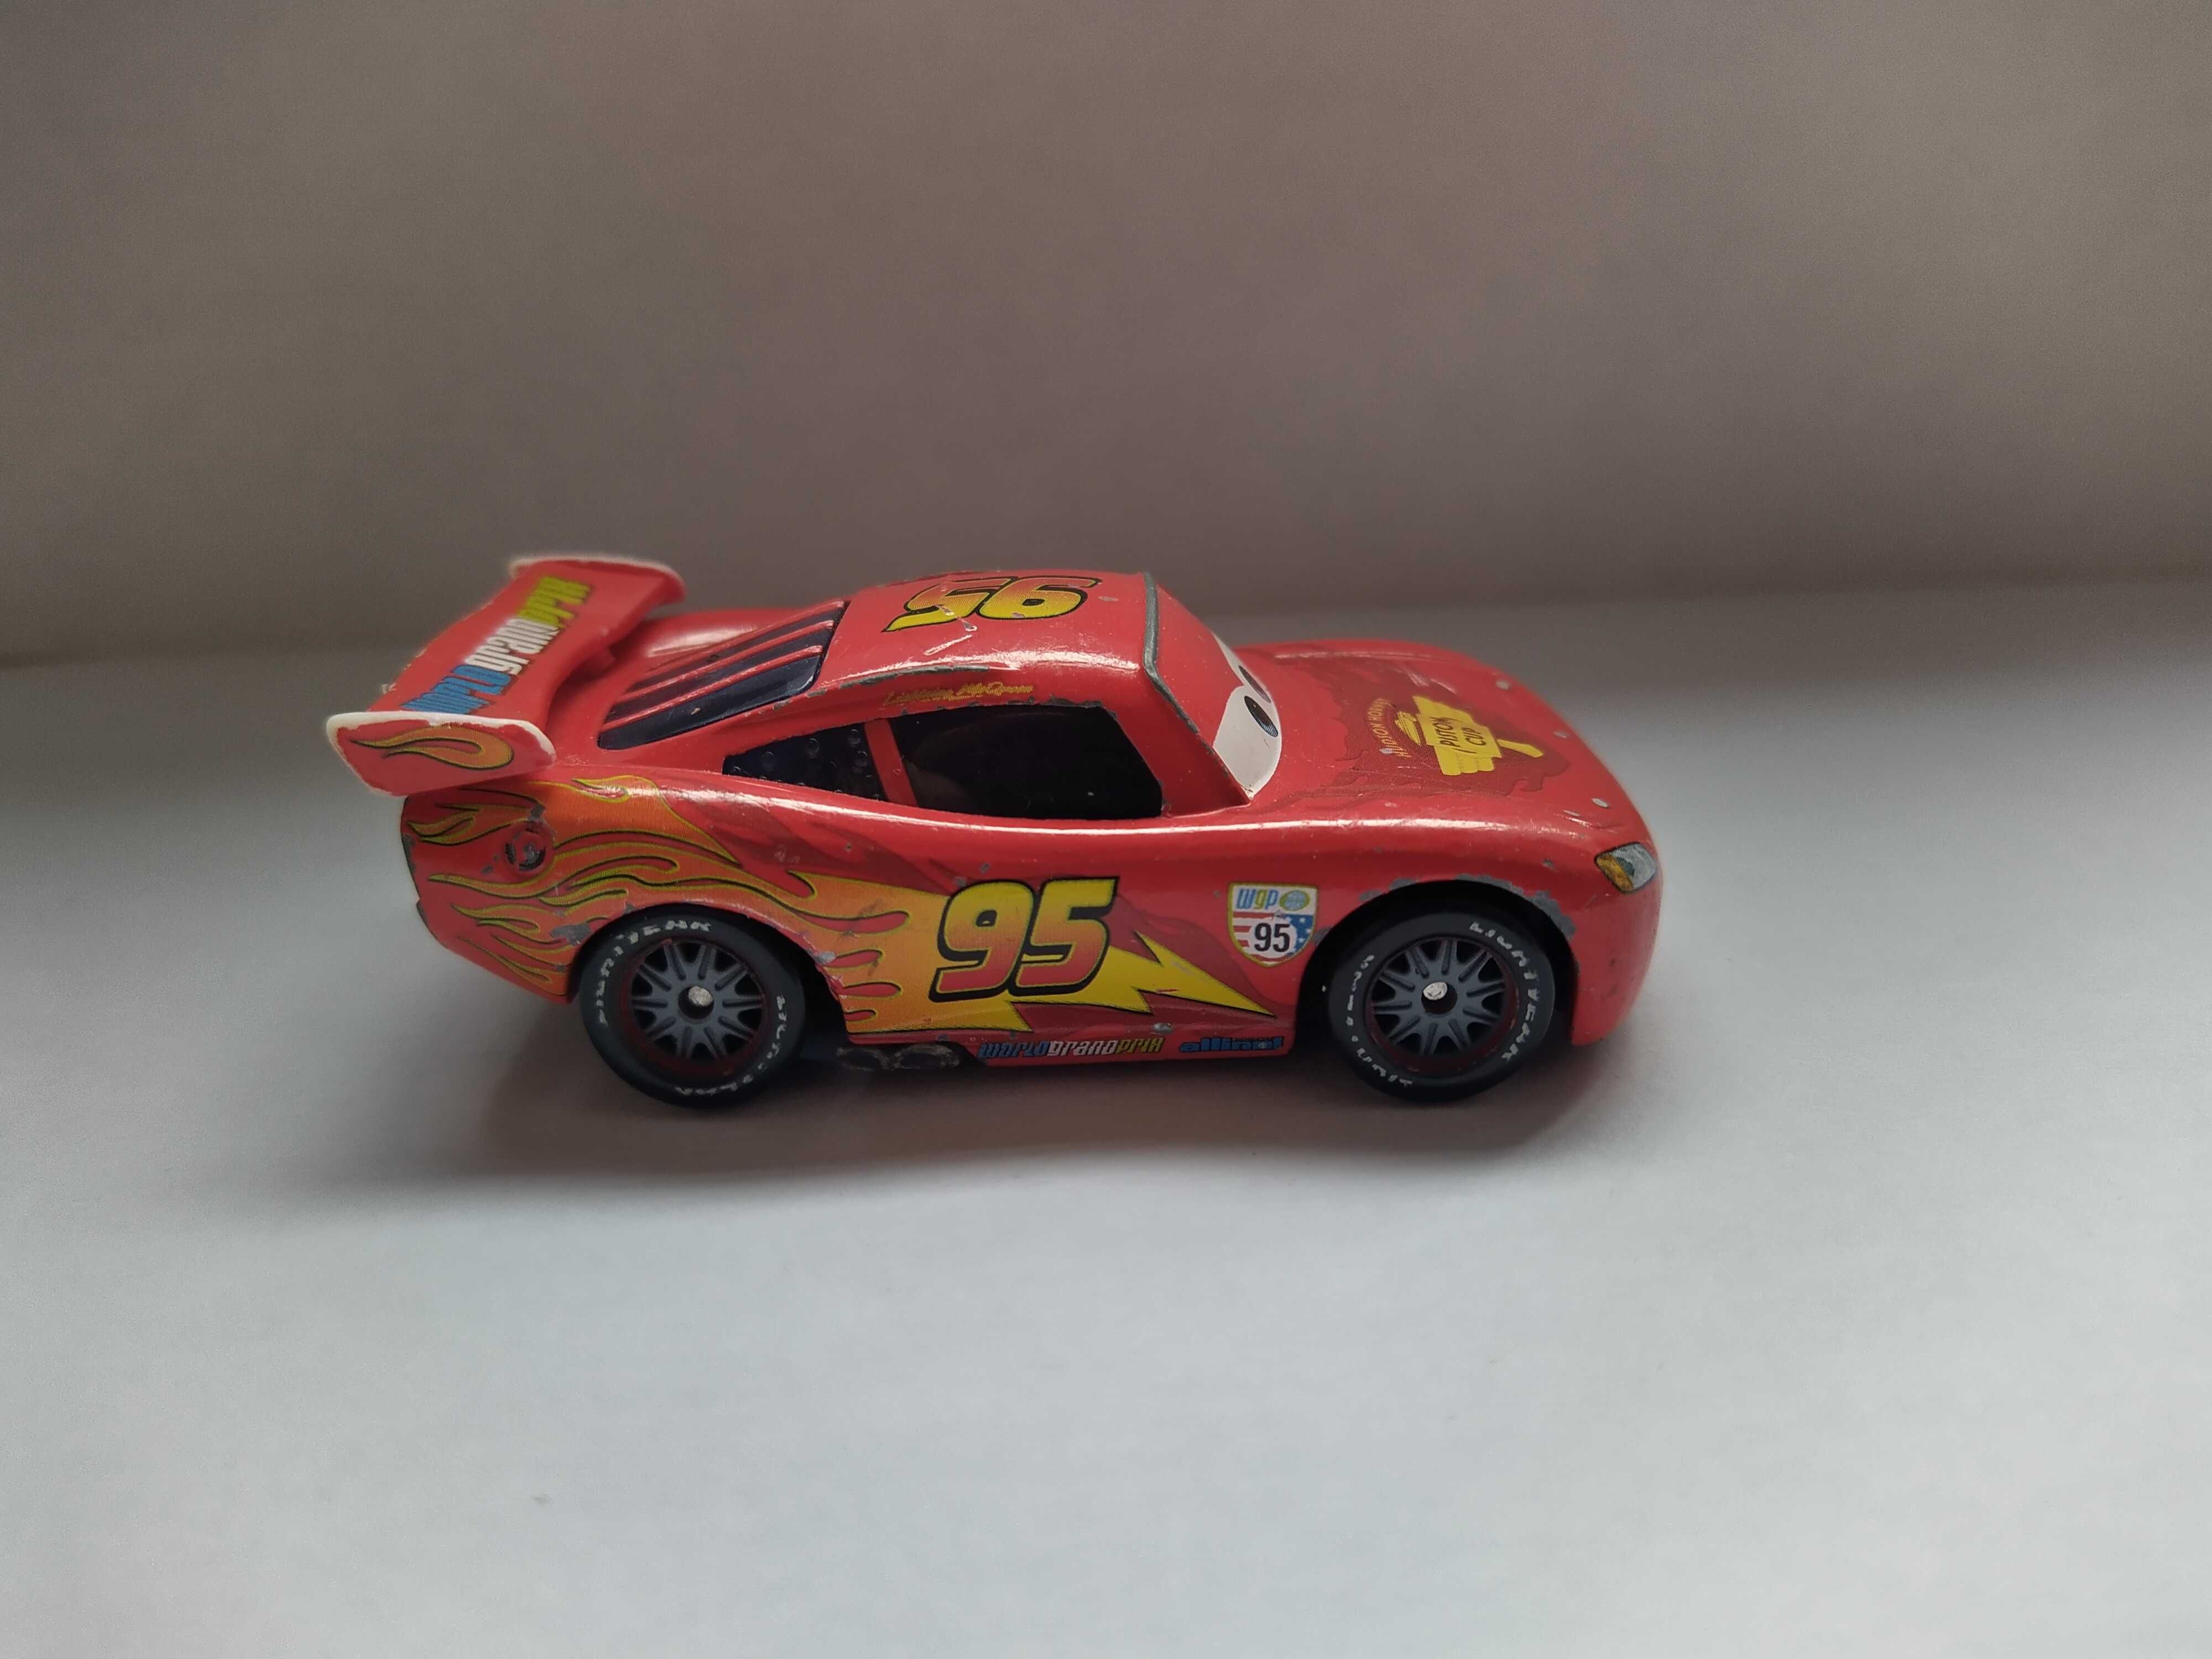 Auta Cars - Zygzak McQueen Piston Cup - Disney/Pixar Mattel